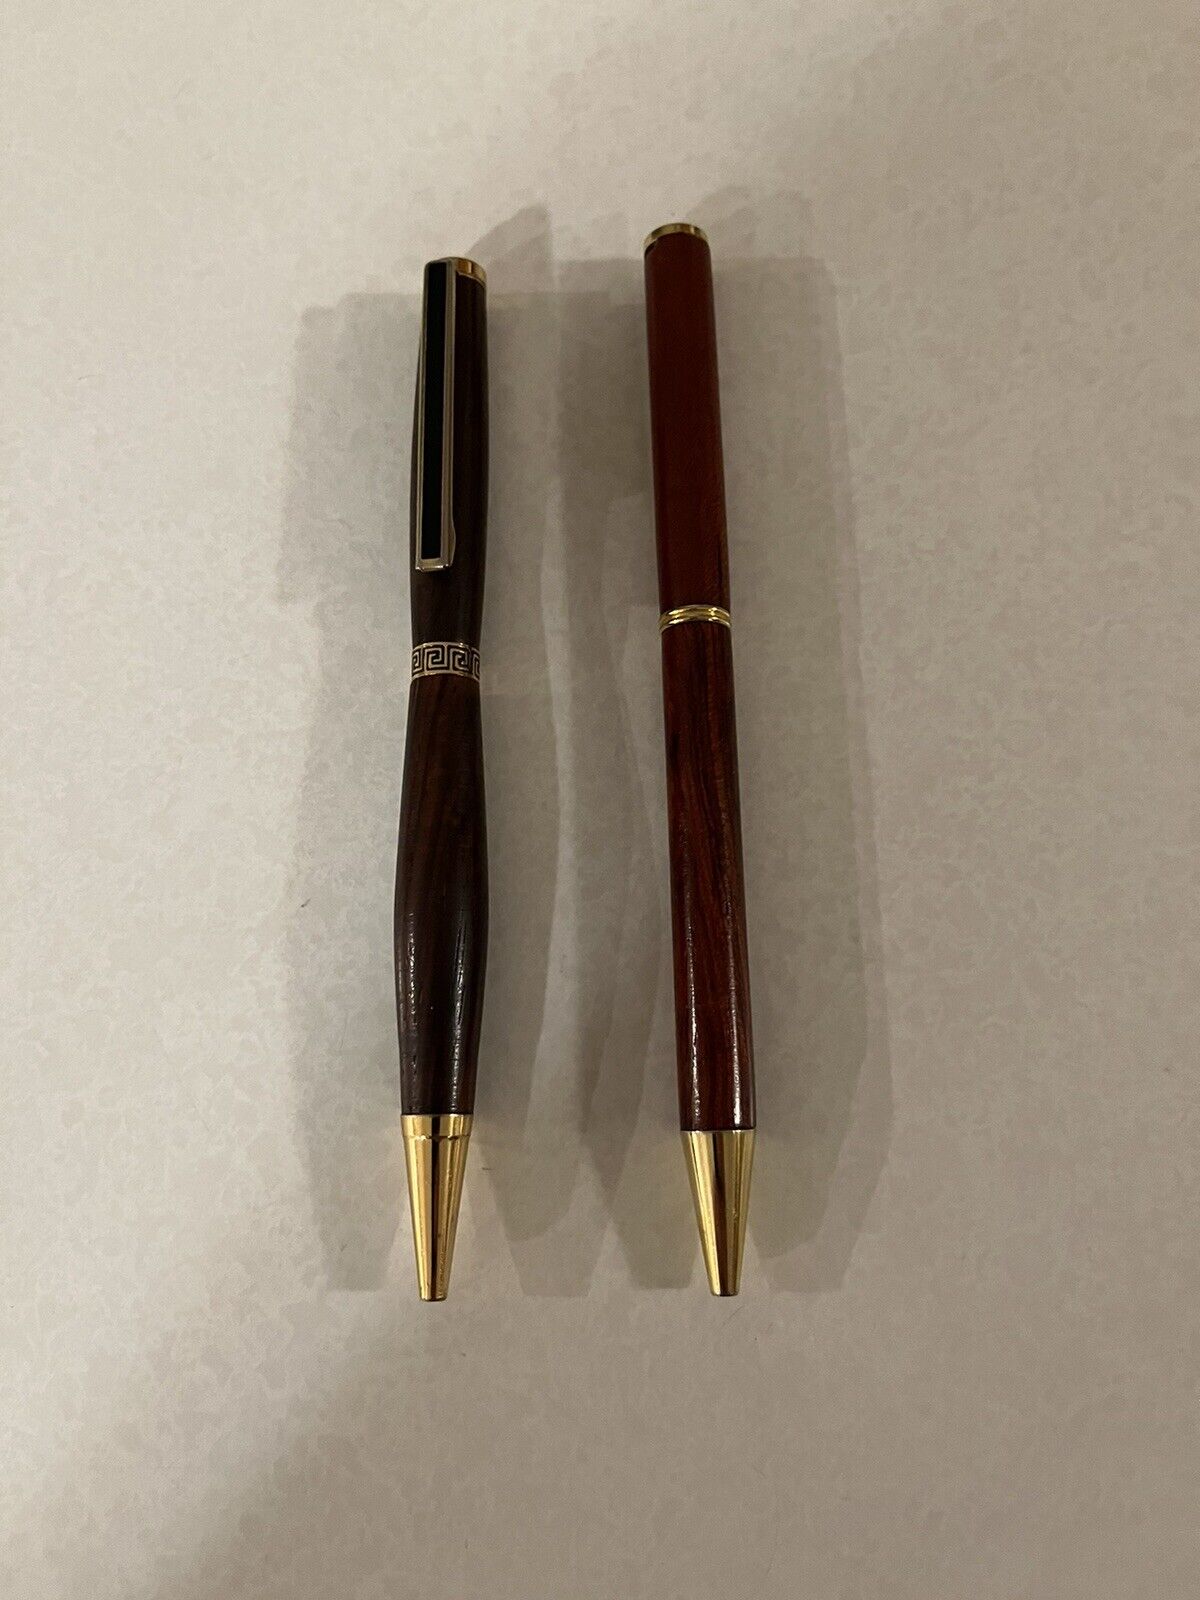 2 Handmade Brown Wooden Ink Pens Twist Action